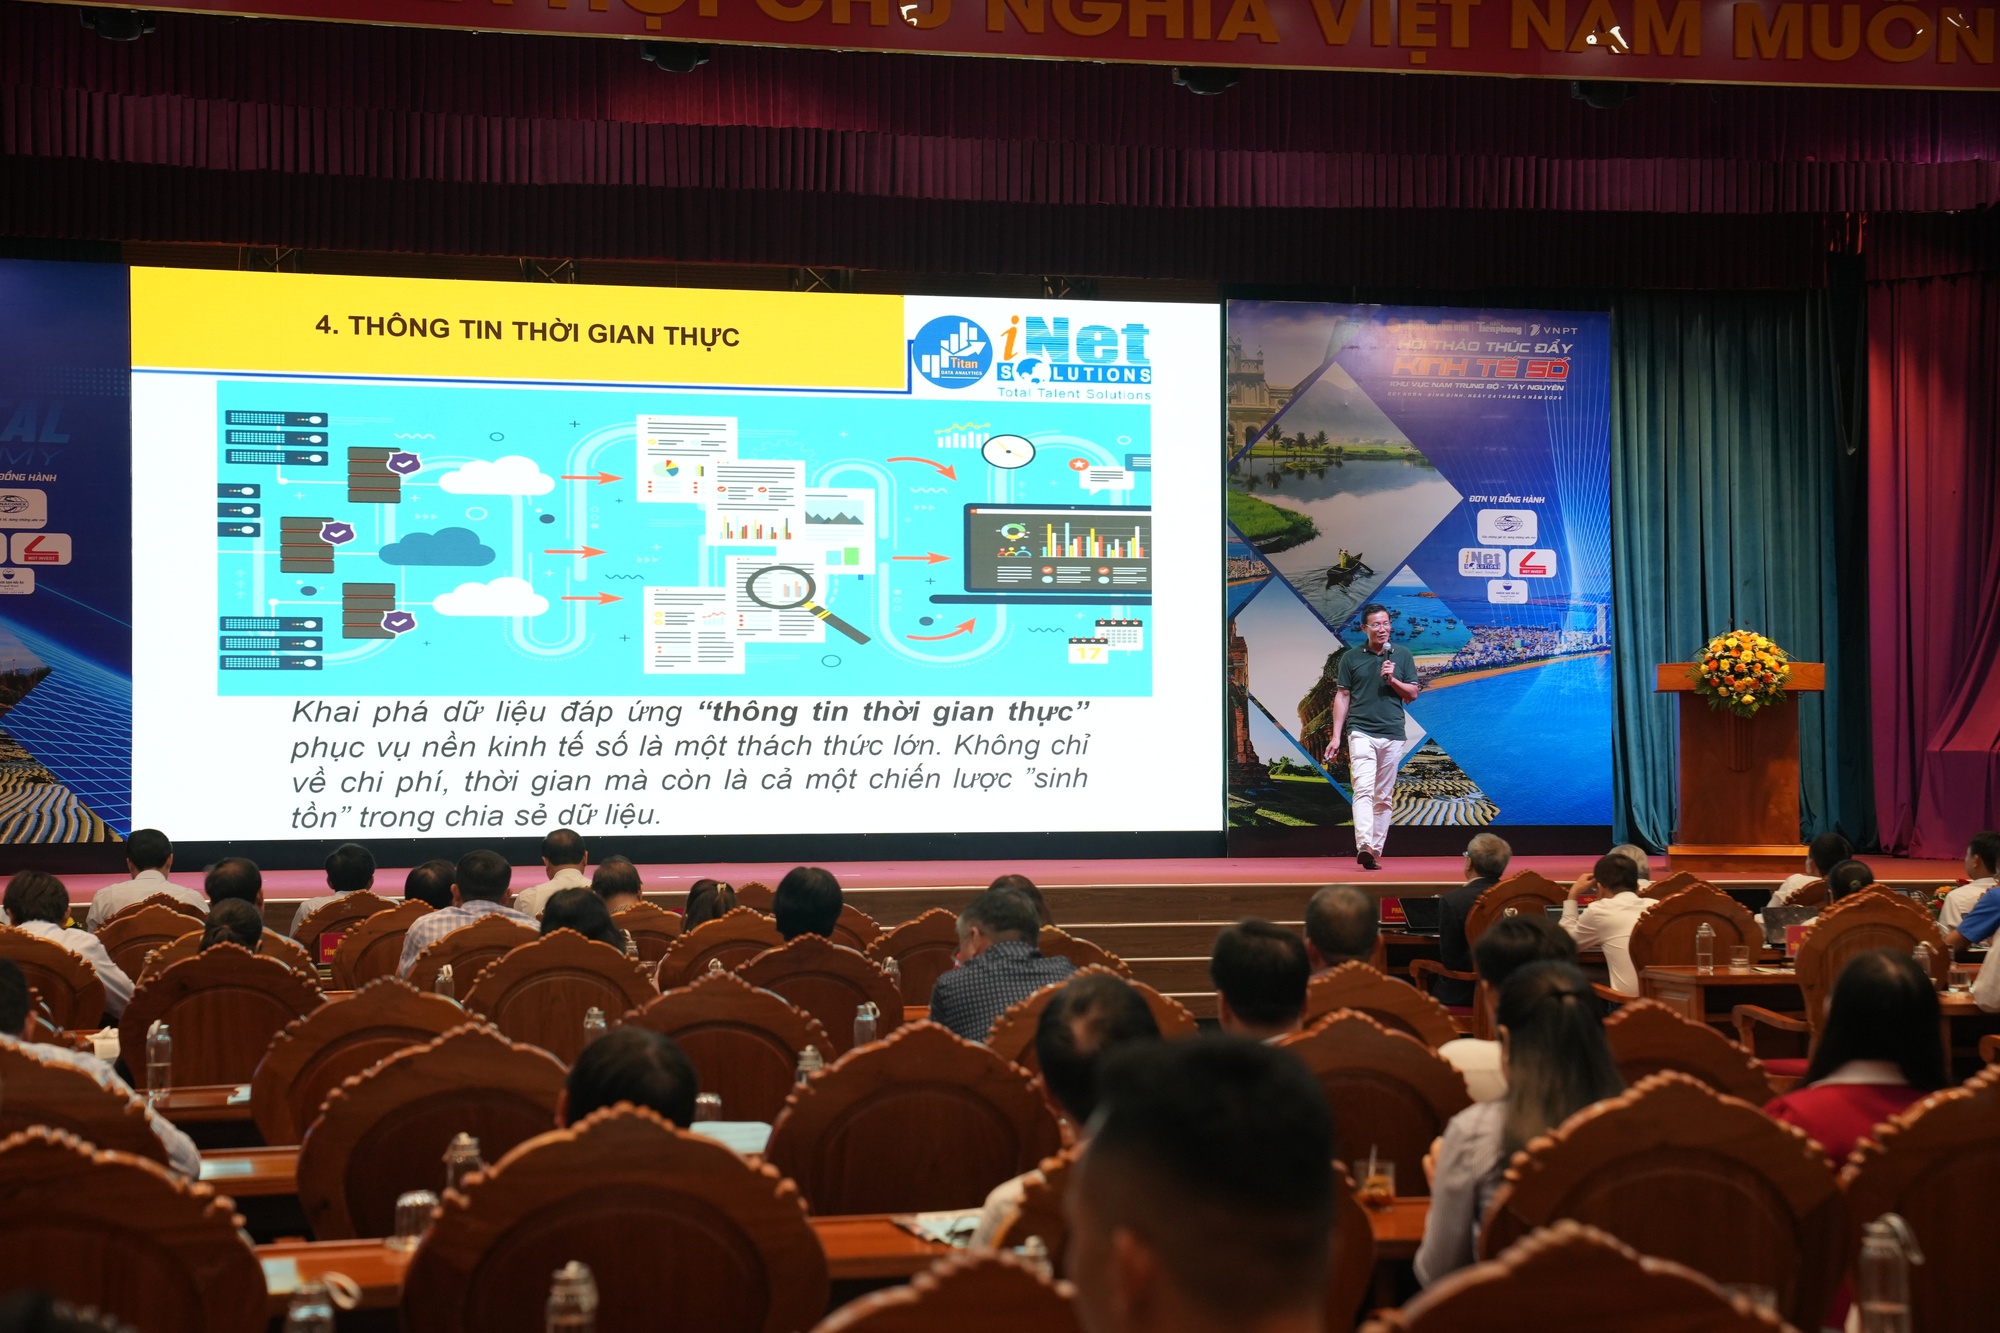 Bình Định trở thành điểm đến của doanh nghiệp công nghệ hàng đầu Việt Nam - Ảnh 2.